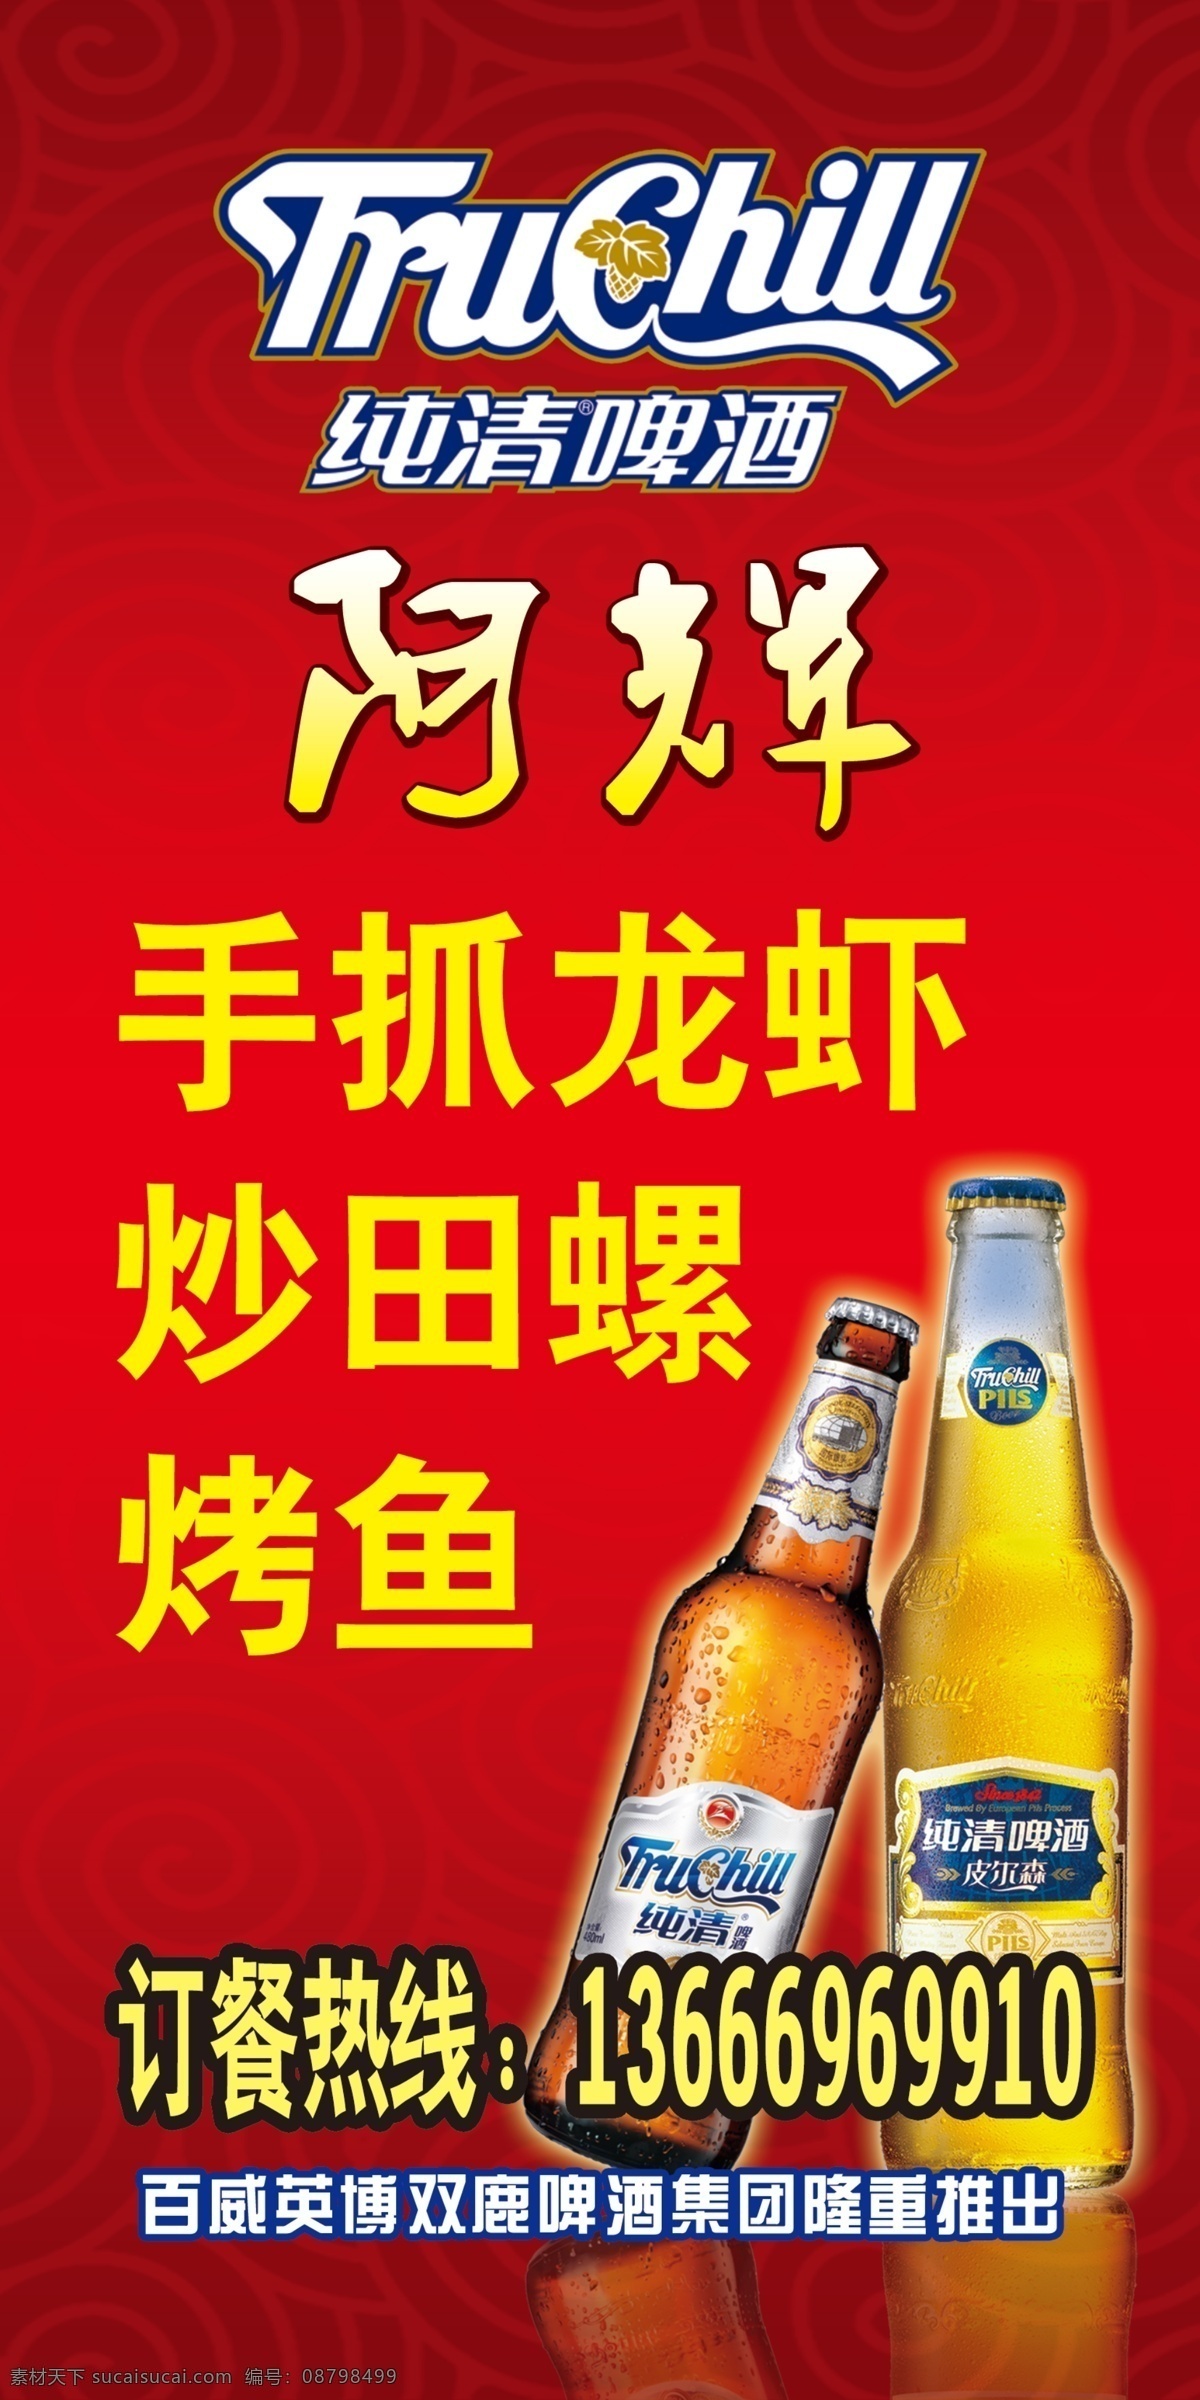 纯清啤酒 阿辉手抓龙虾 啤酒图片 传统底纹 海报 广告设计模板 源文件